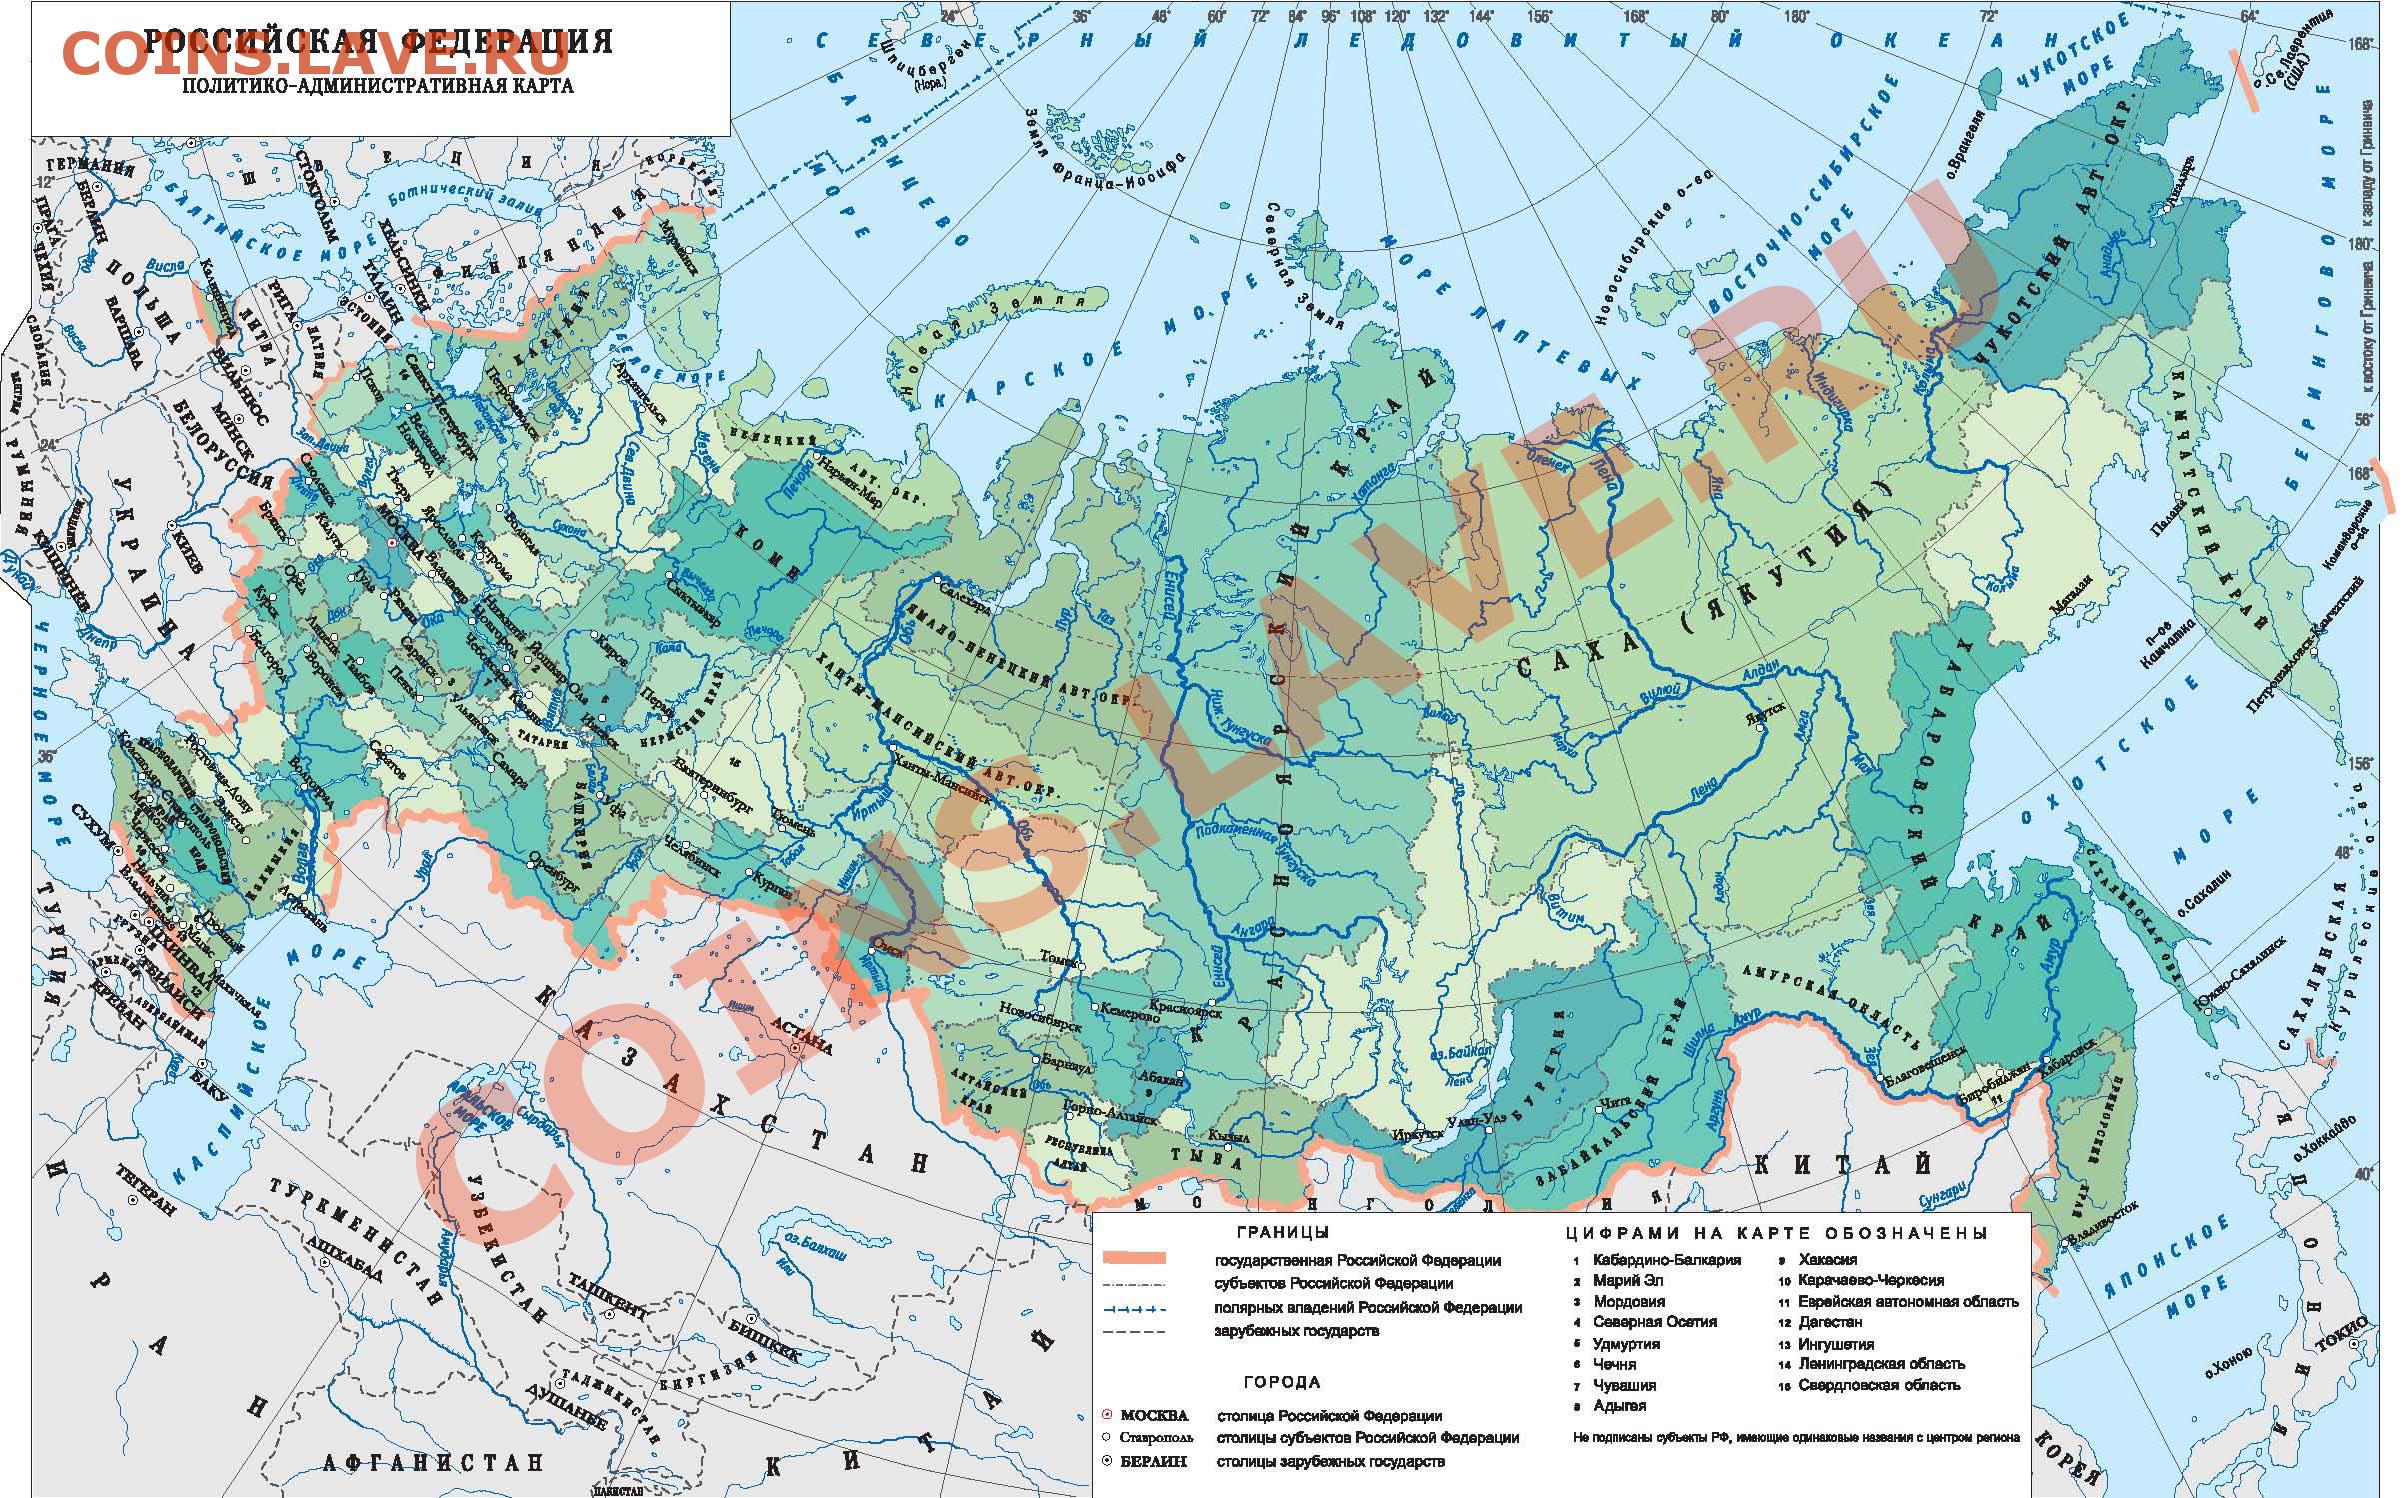 Карта россии города реки горы